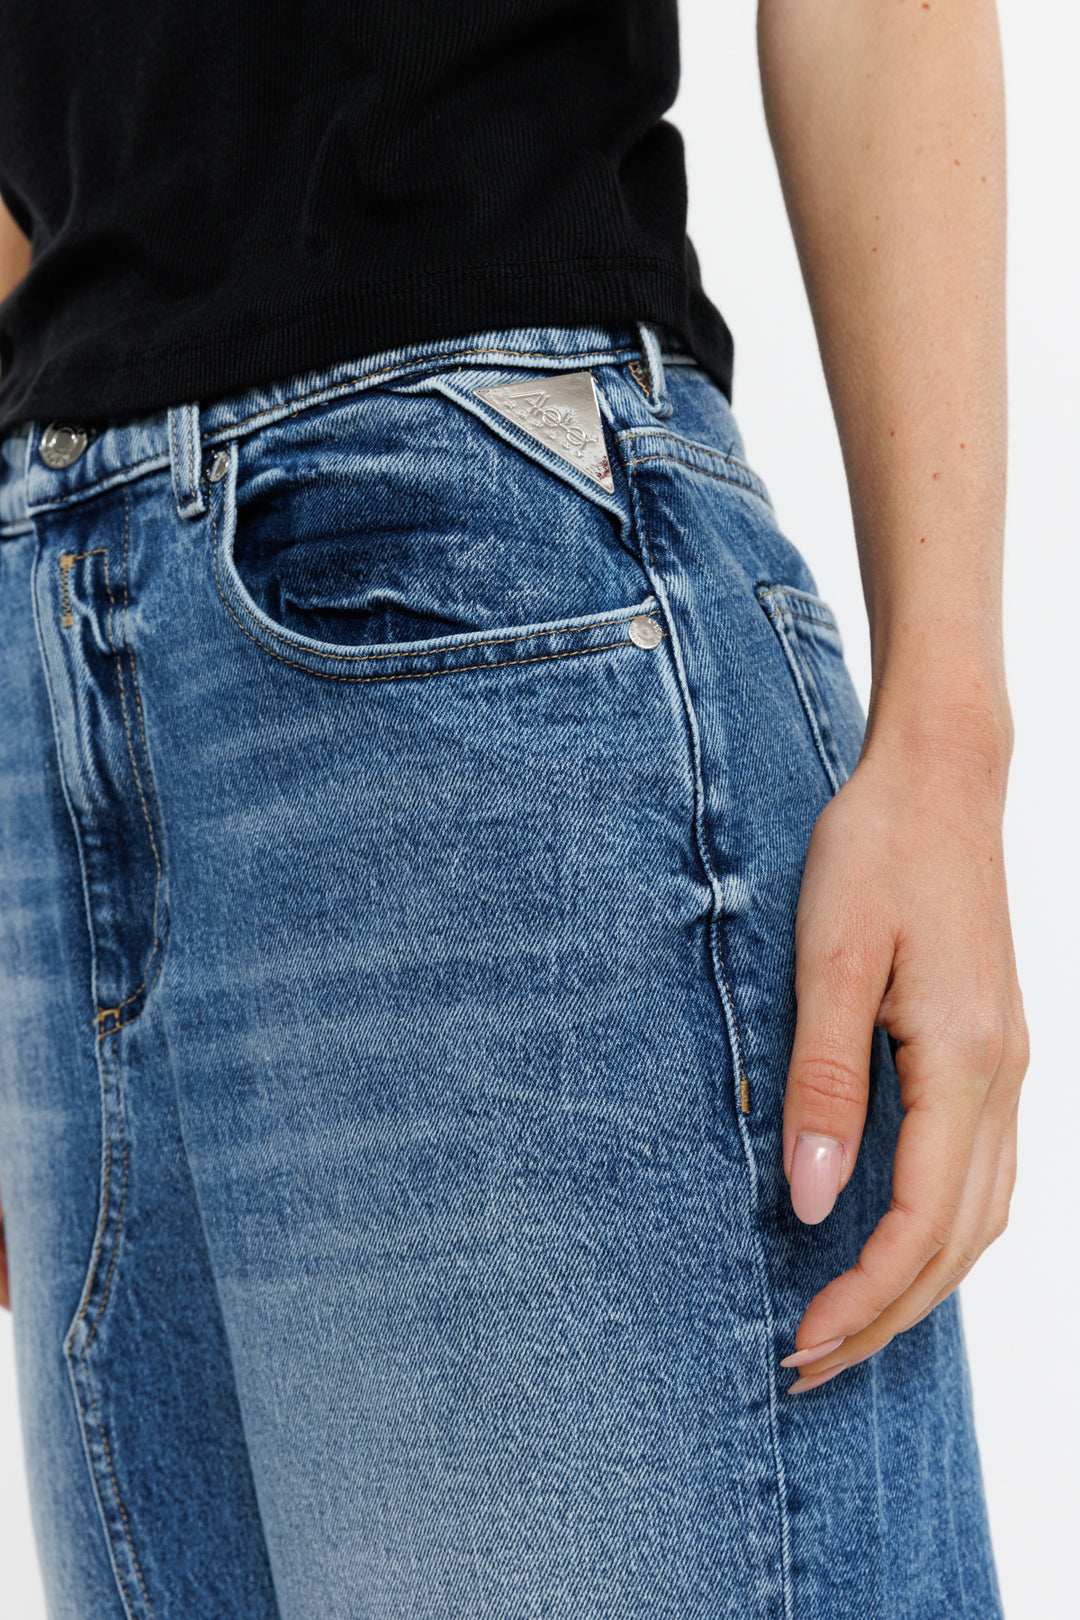 חצאית מידי ג'ינס Gonne בצבע כחול